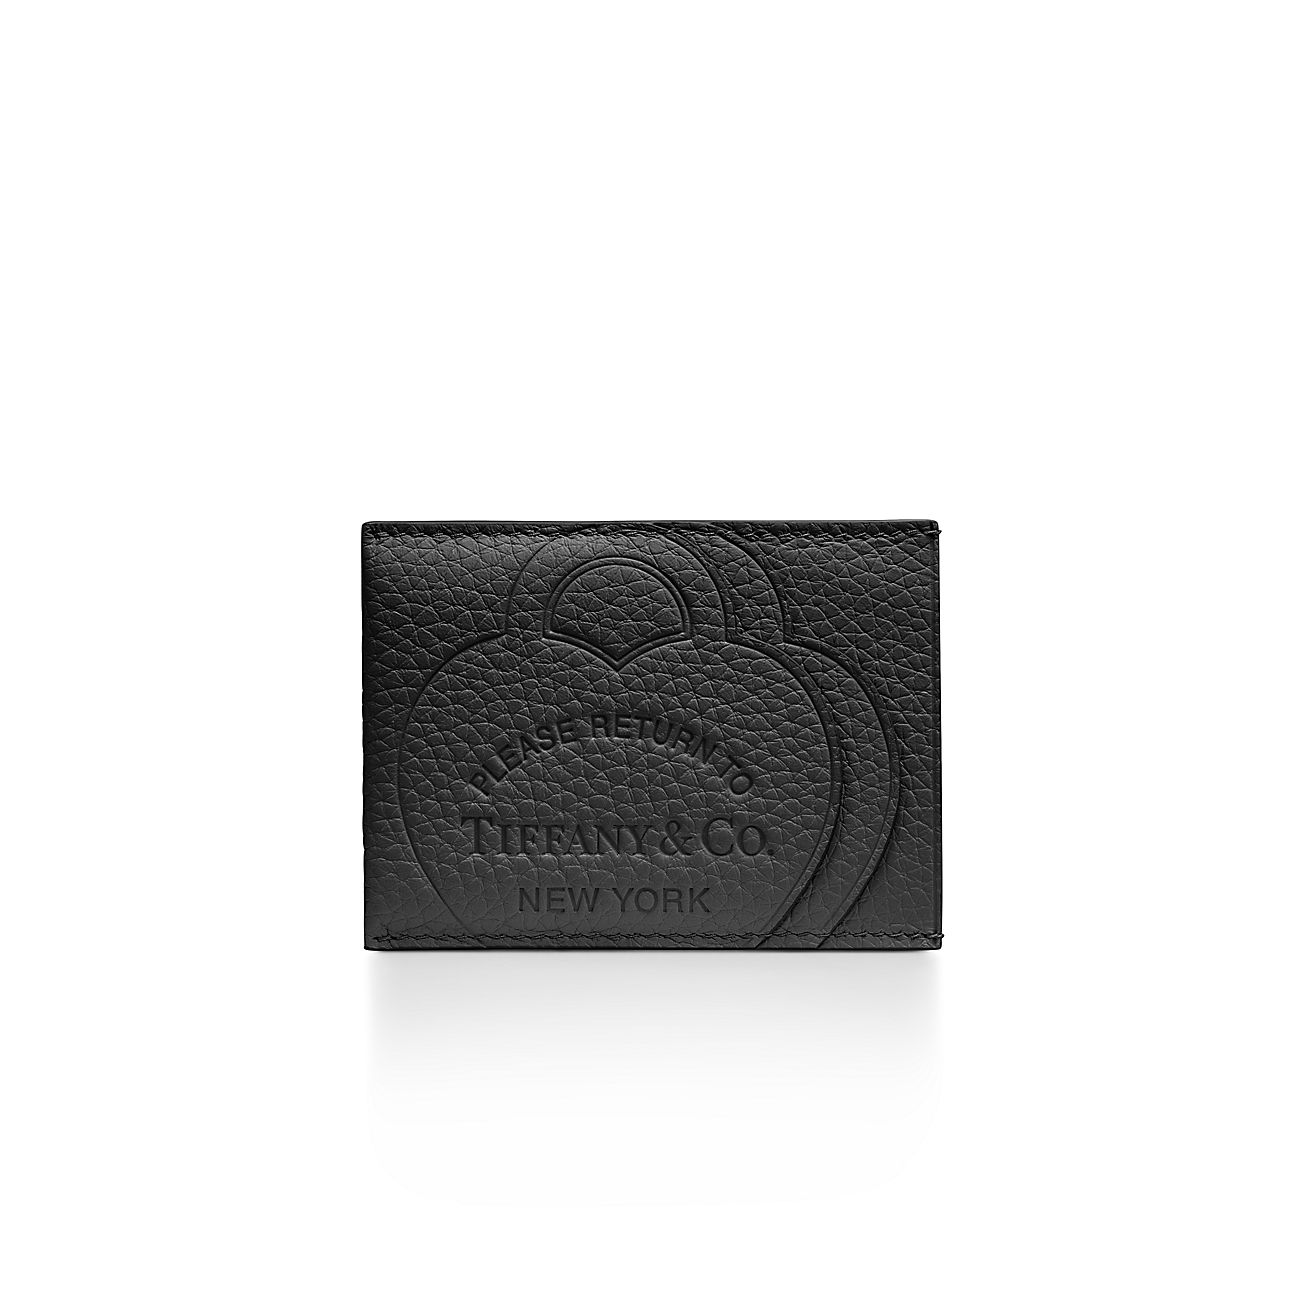 リターン トゥ ティファニー™ カード ケース ブラック レザー 